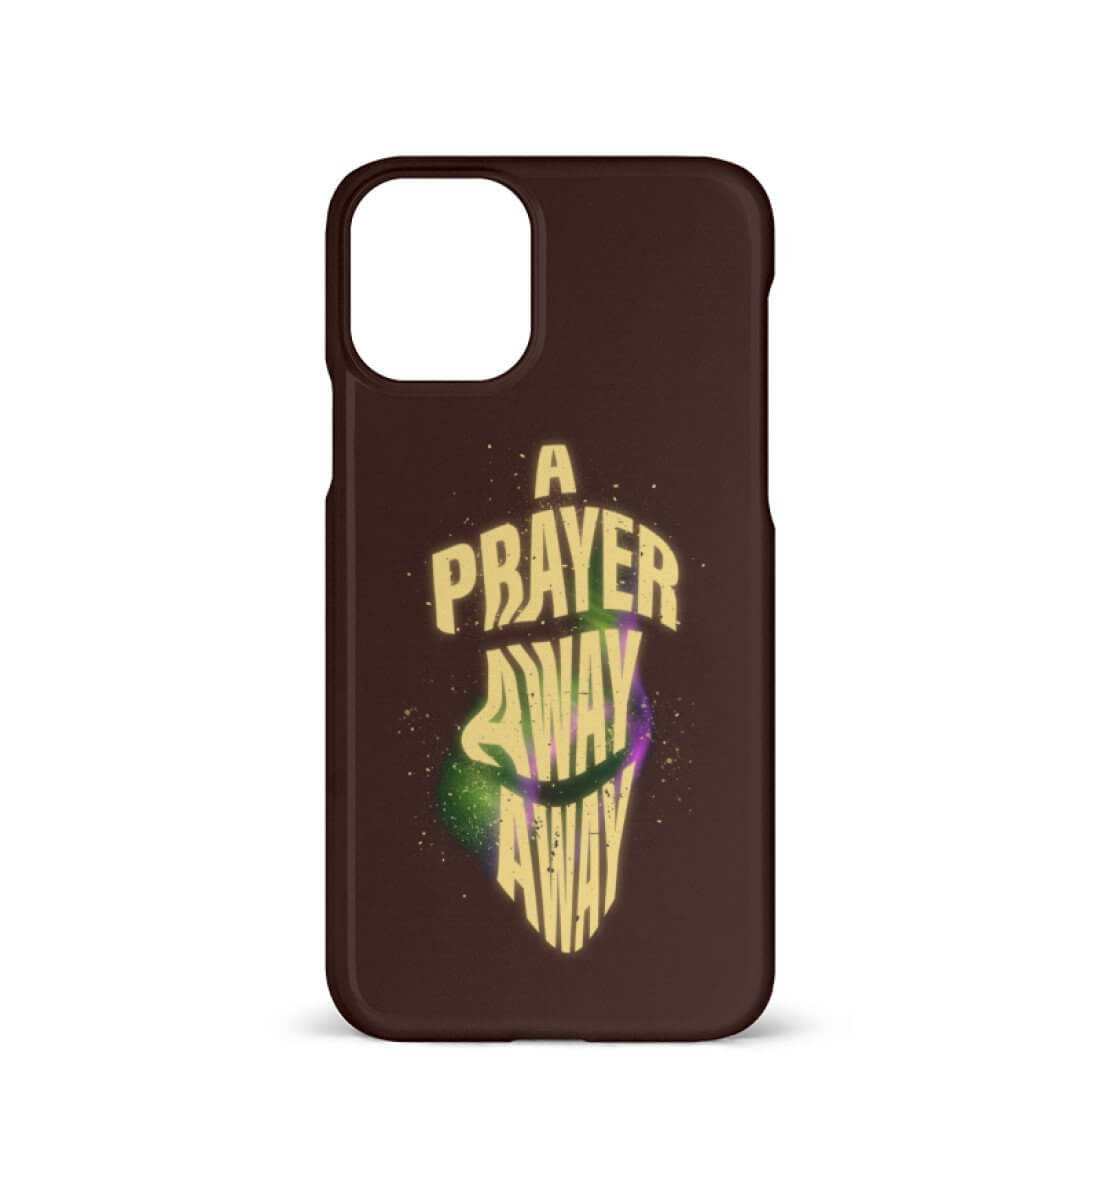 A PRAYER AWAY AWAY | - iPhone 11 Handyhülle - GODVIBES